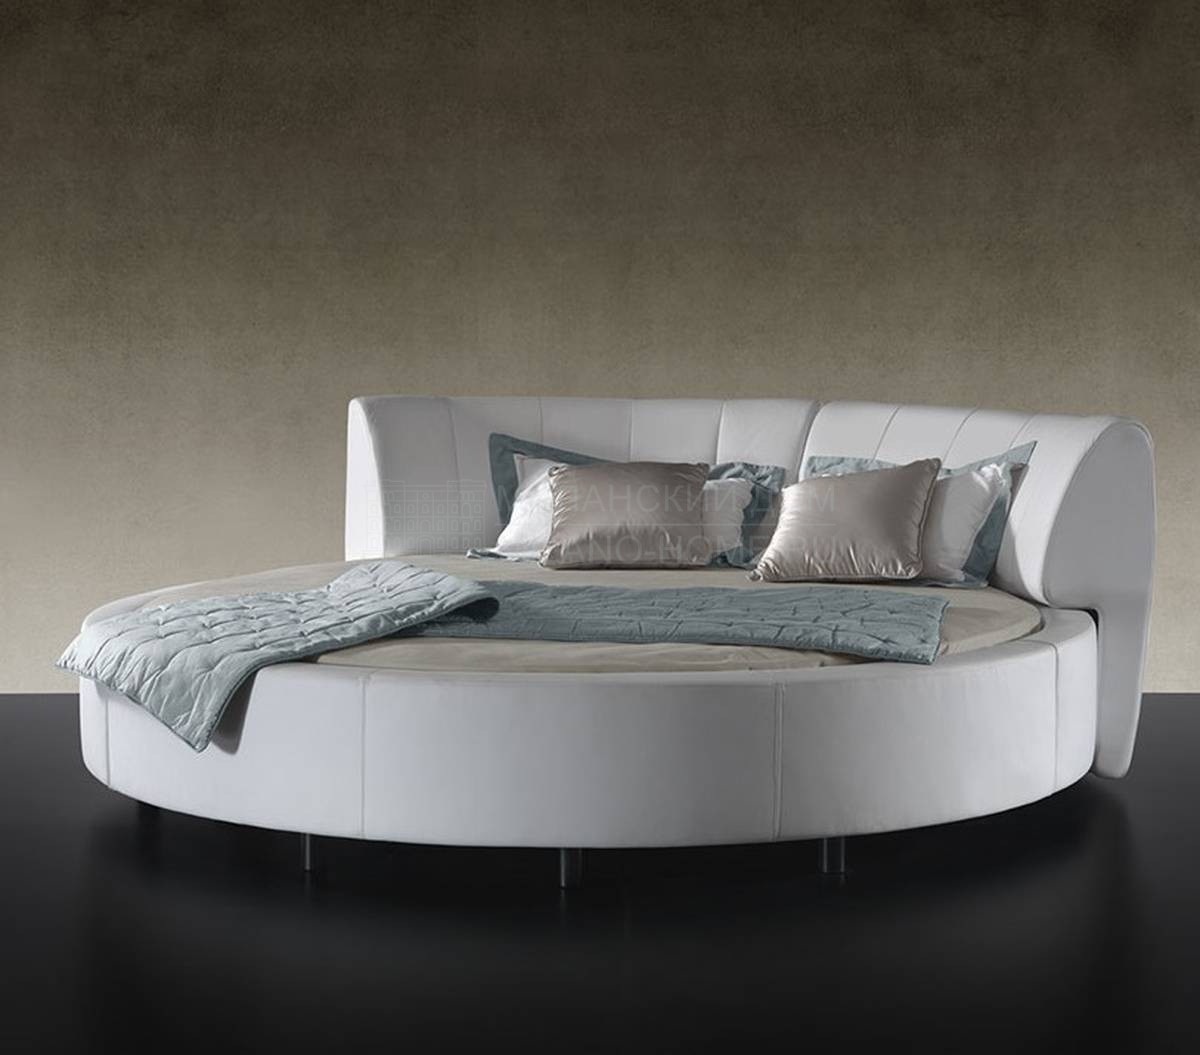 Круглая кровать Luna Letto из Италии фабрики REFLEX ANGELO